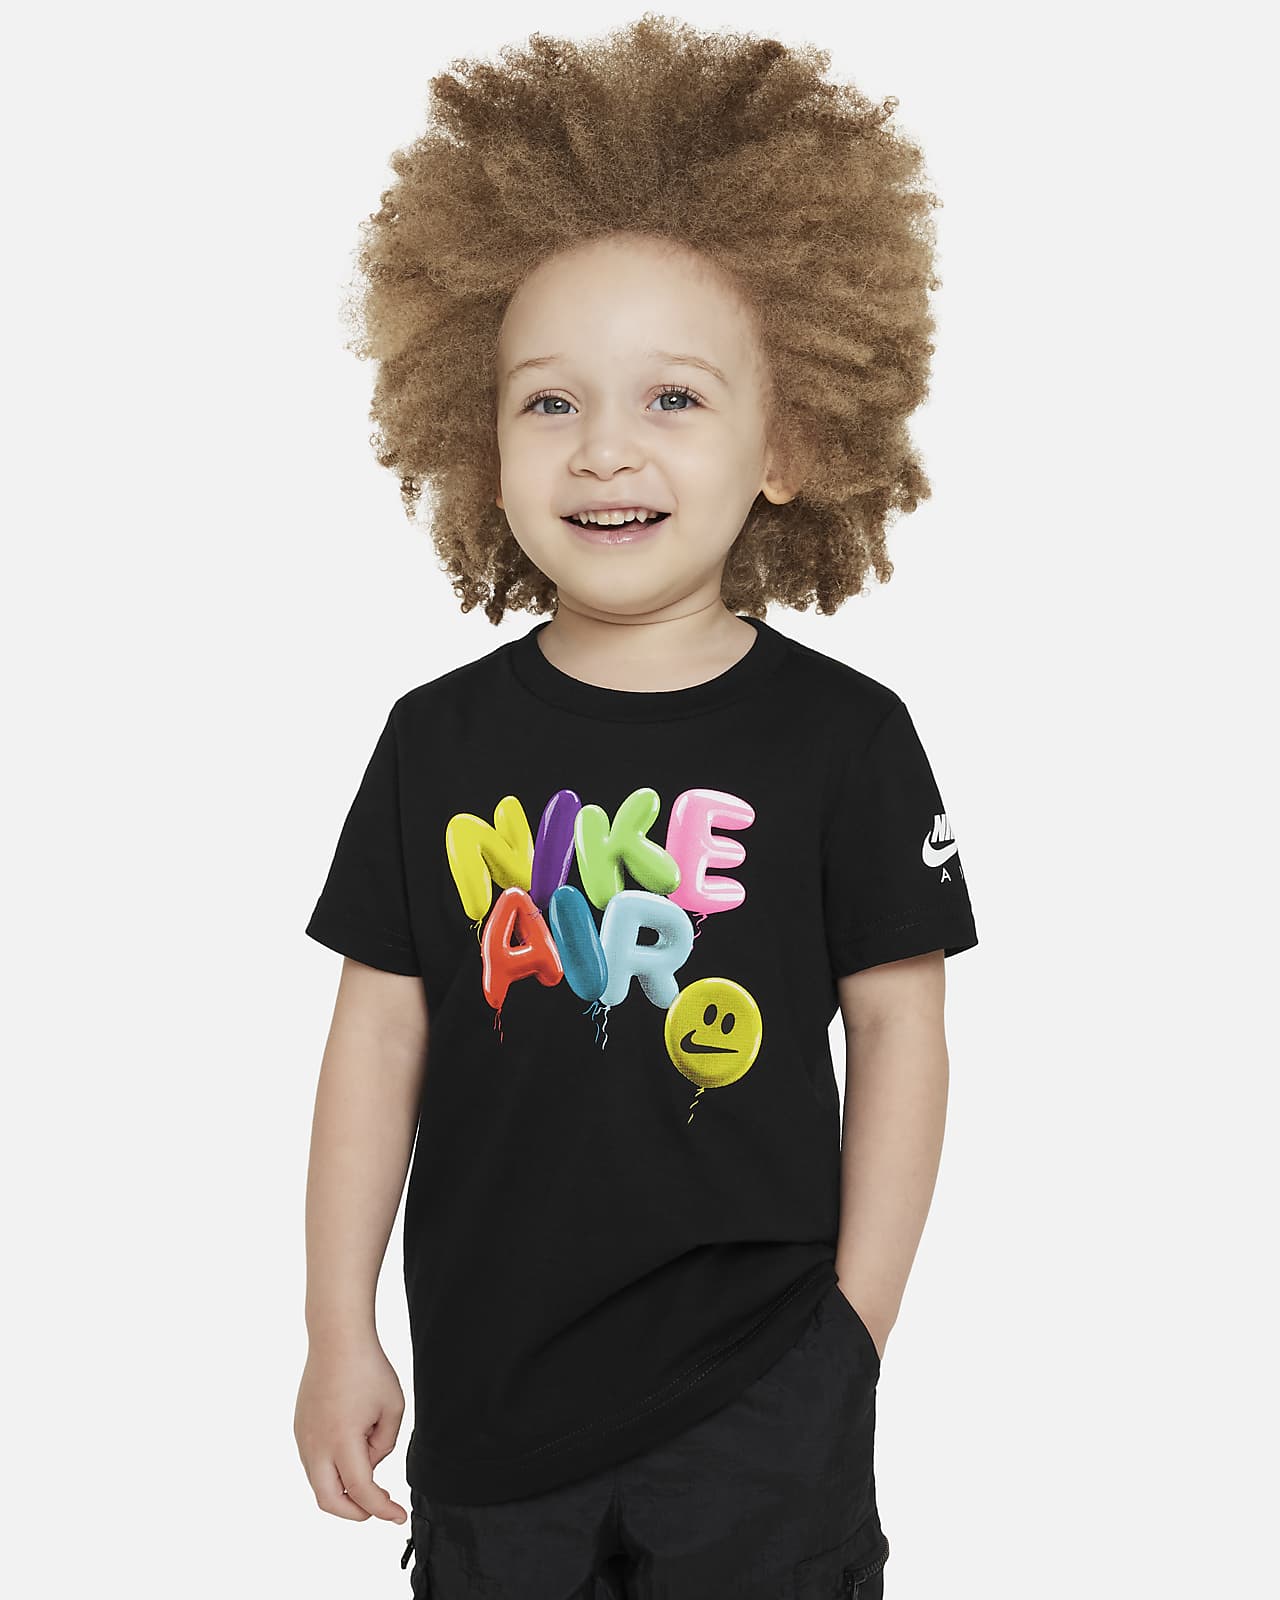 Nike Air Balloon Tee Toddler T-Shirt. Nike LU